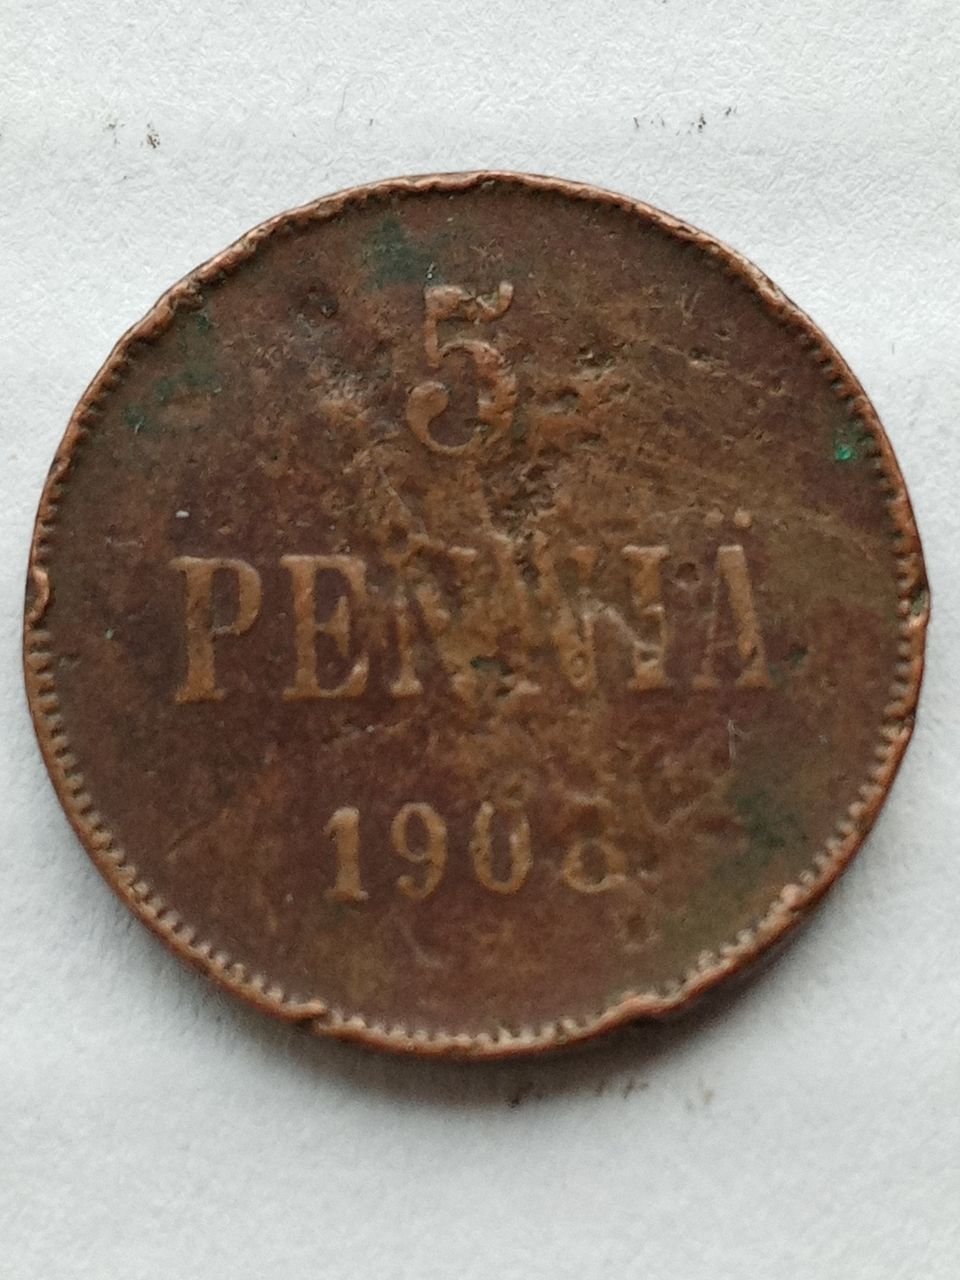 5 penniä 1908